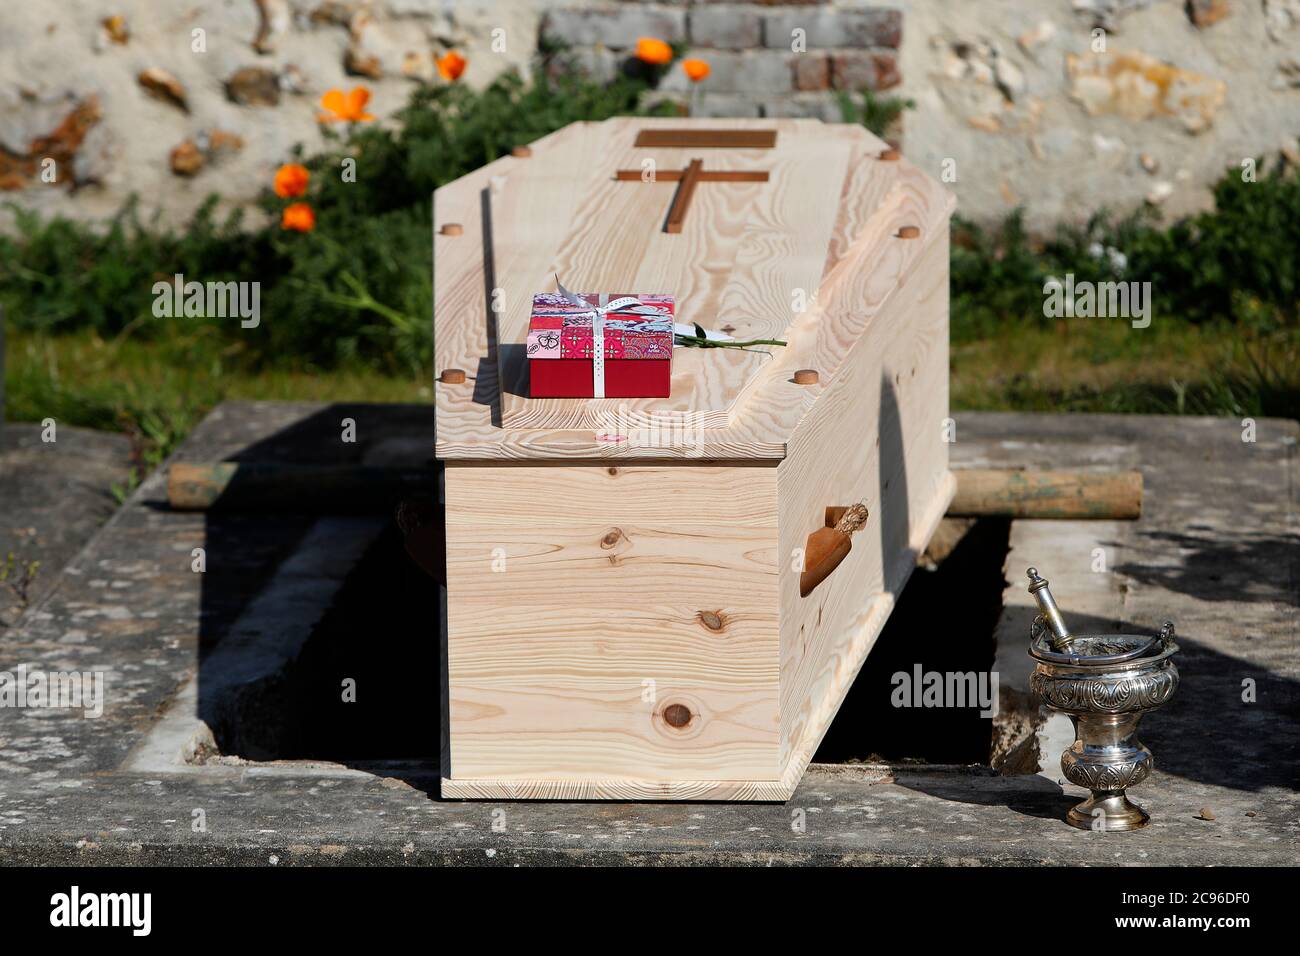 Funérailles au cimetière d'Evreux, France pendant l'épidémie de COVID-19. Banque D'Images